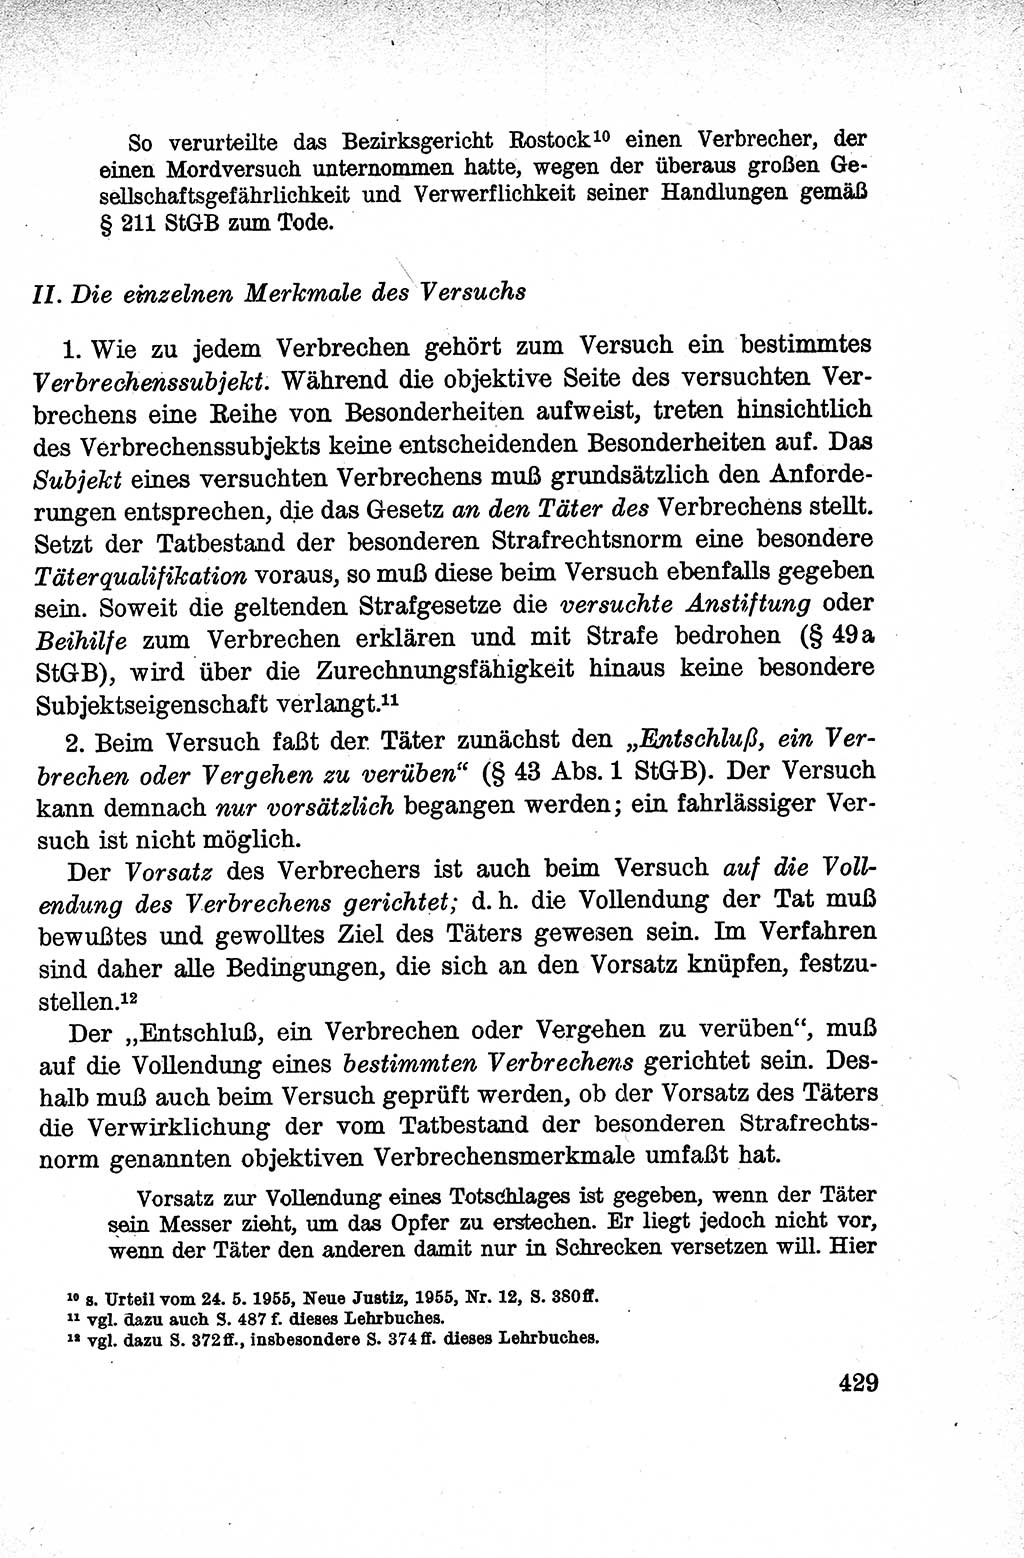 Lehrbuch des Strafrechts der Deutschen Demokratischen Republik (DDR), Allgemeiner Teil 1959, Seite 429 (Lb. Strafr. DDR AT 1959, S. 429)